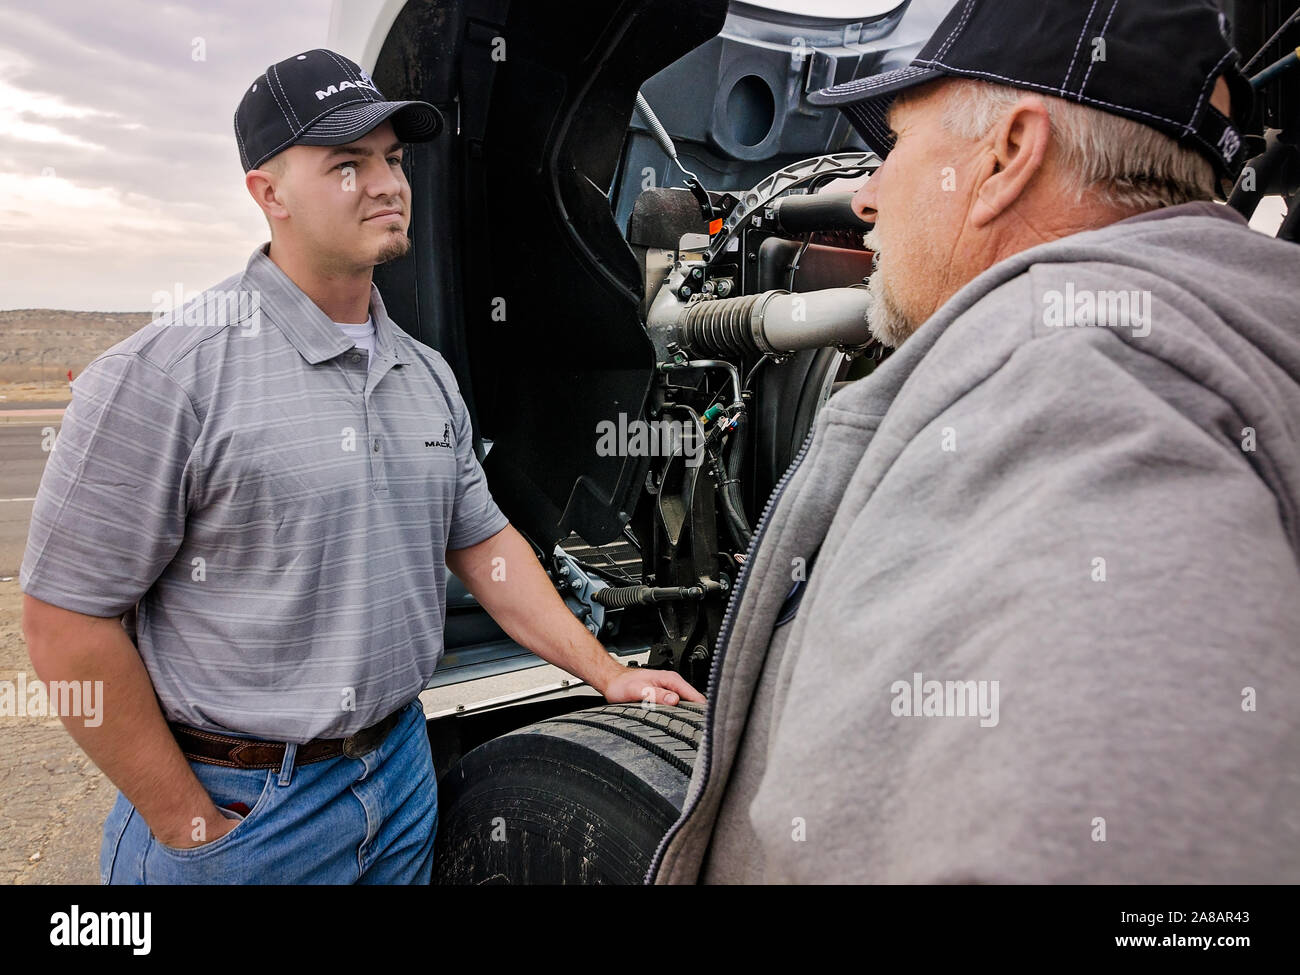 Un Mack Trucks service manager parla con un cliente di Bruckner Truck Sales, nov. 16, 2017, in Farmington, Nuovo Messico. Foto Stock